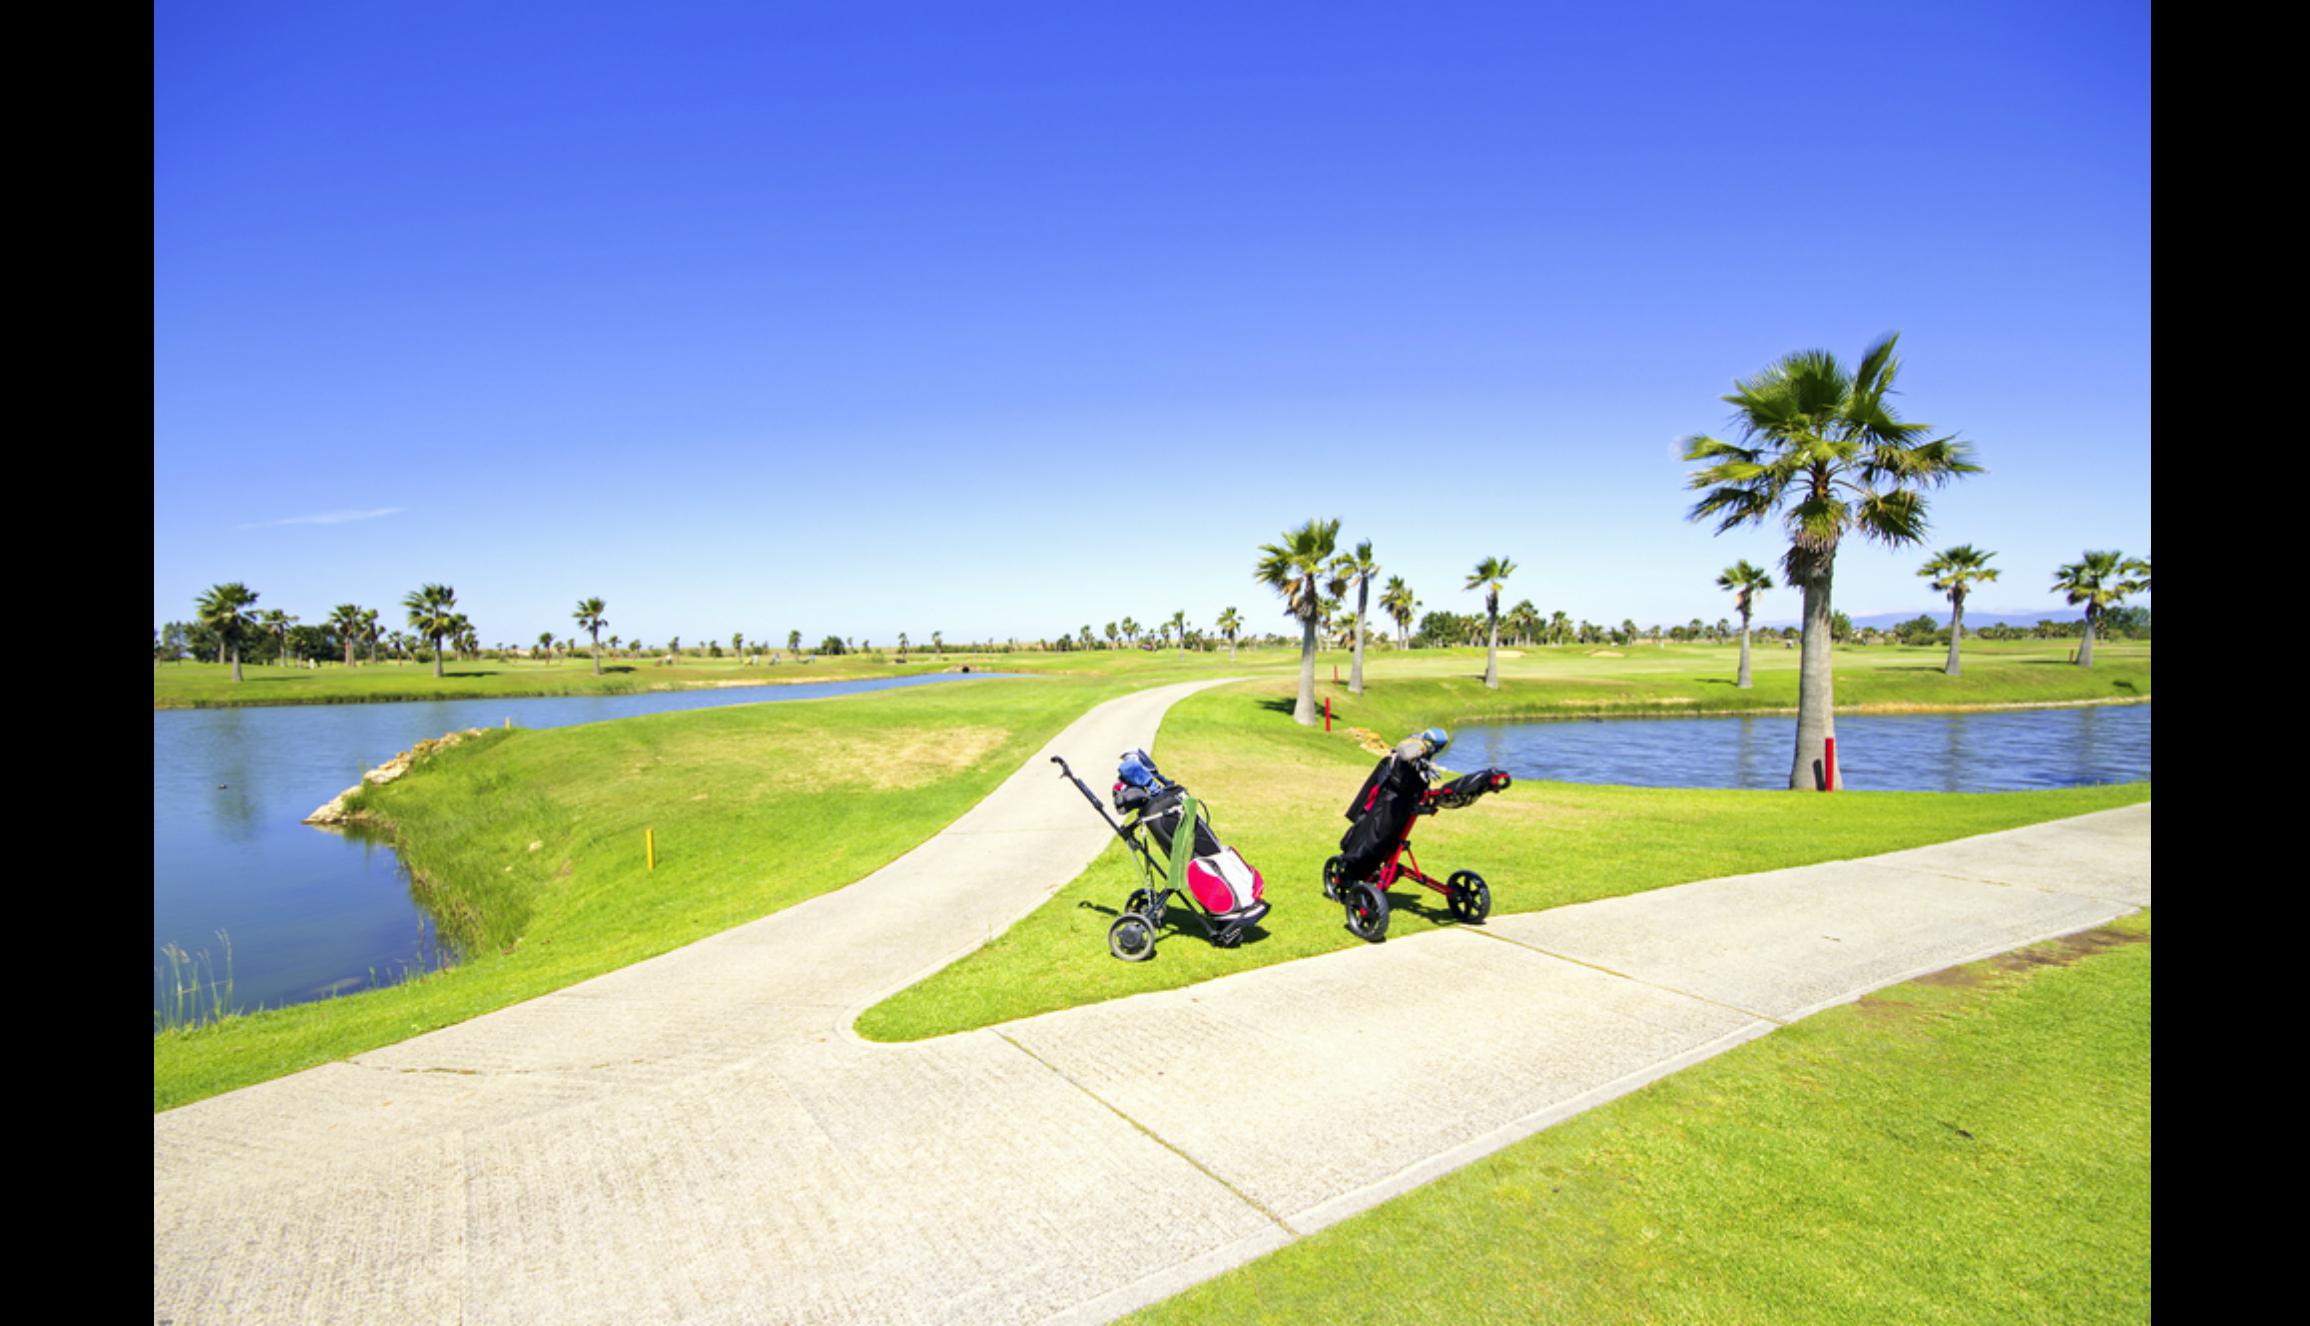 La región de Algarve, es famosa por su clima cálido que permanece por todo el año y por ser el mejor destino de golf de Europa y el mundo, según los World Golf Awards 2014.     Foto: Shutterstock.